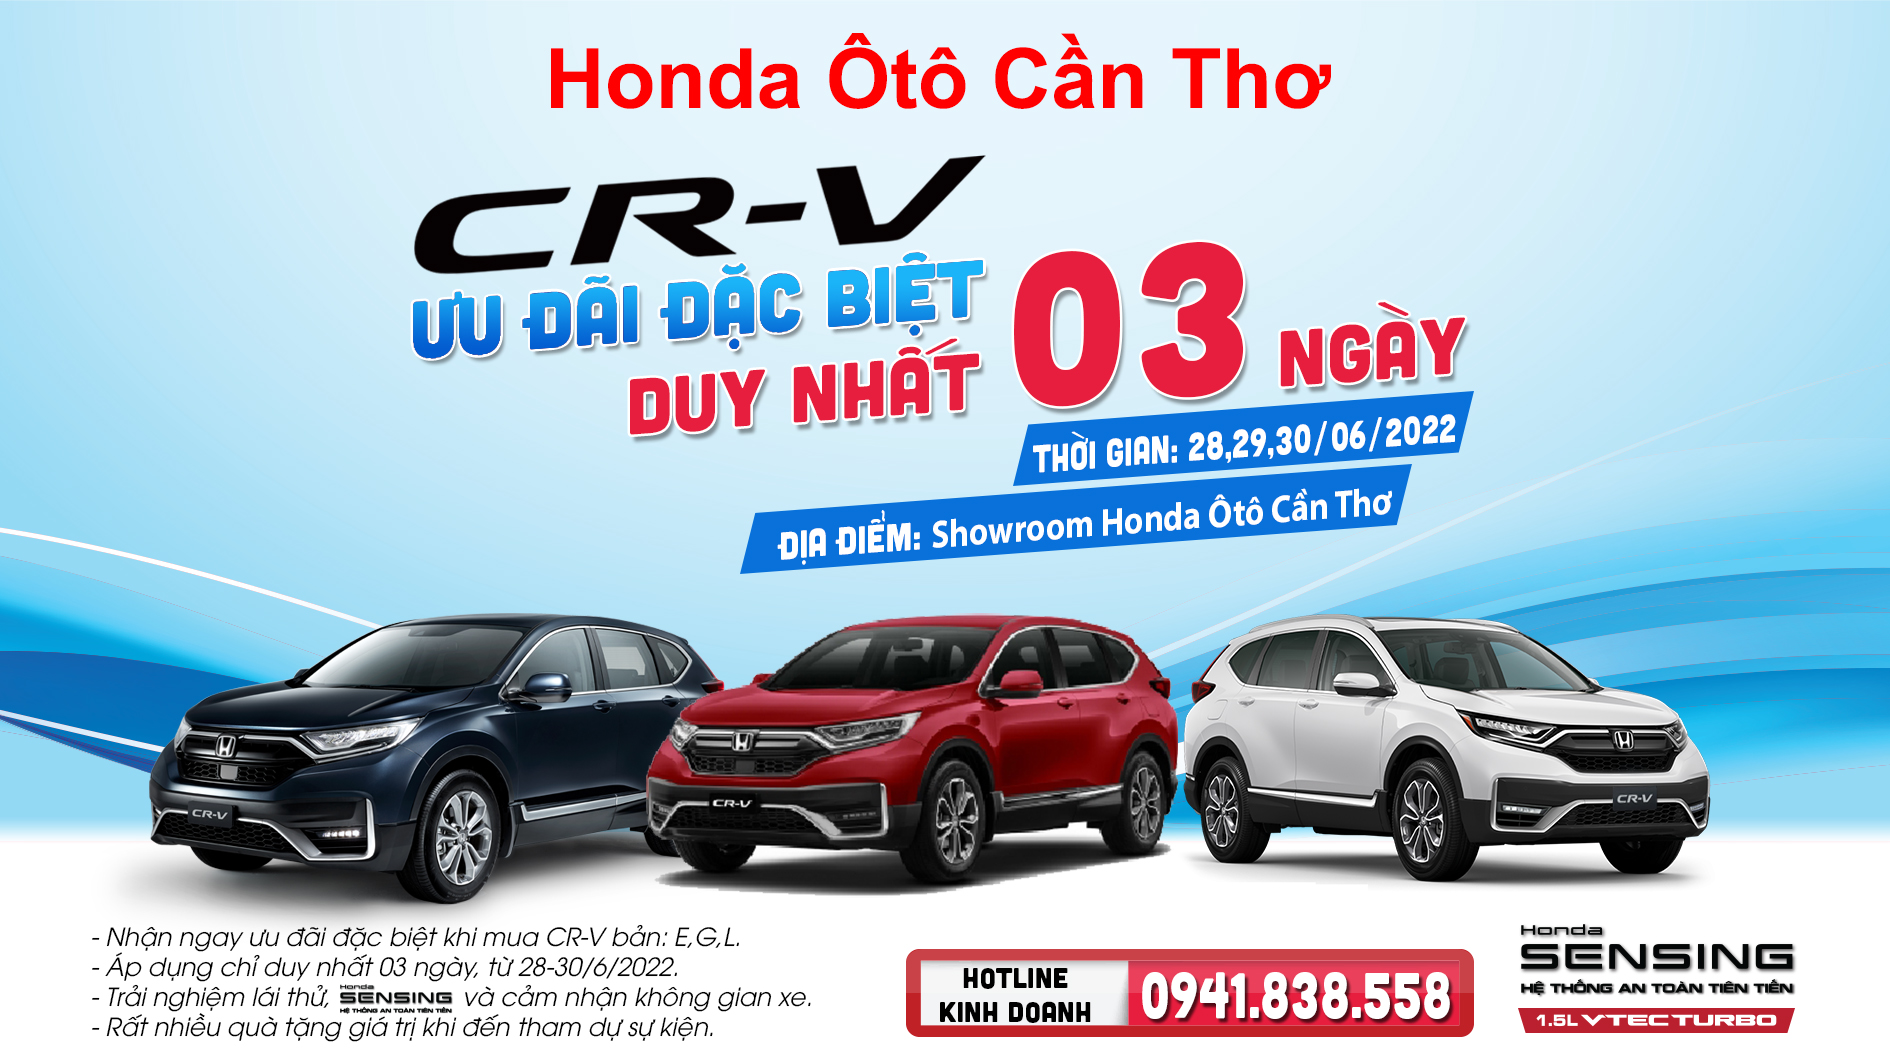 Honda CR-V: Ưu Đãi Đặc Biệt chỉ 03 ngày duy nhất